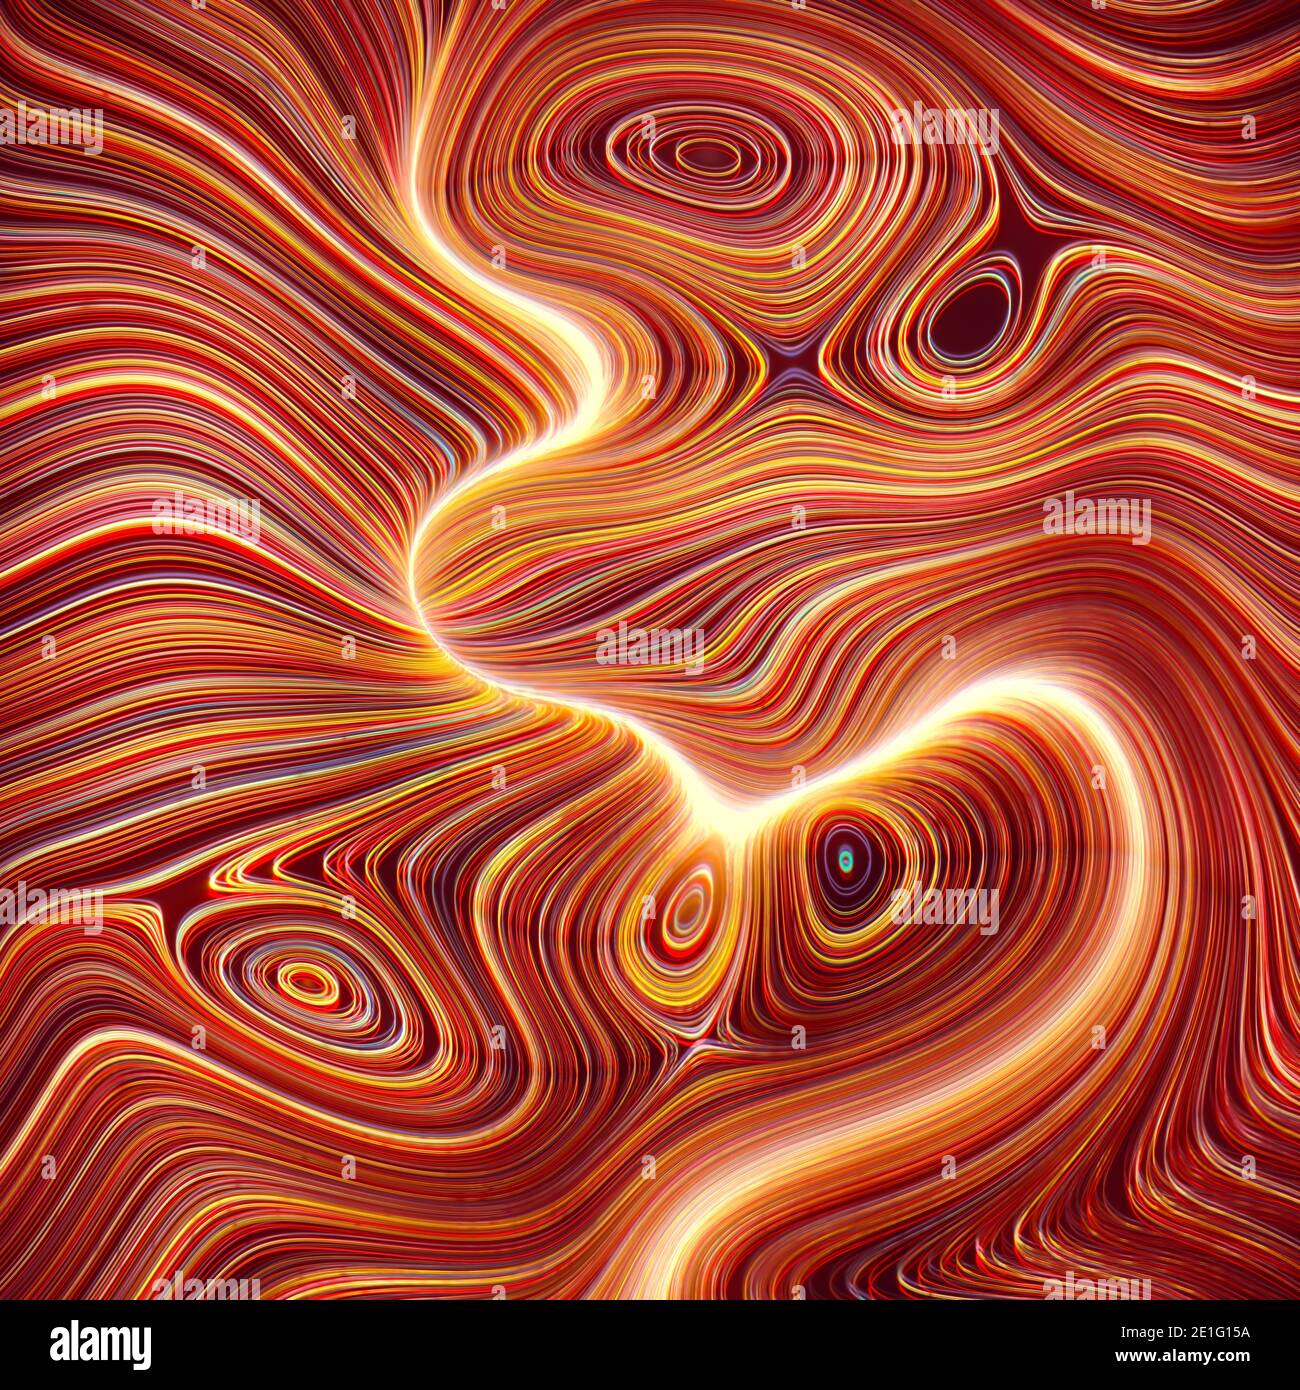 Ilustración 3D, fondo abstracto colorido. Imagen con formas orgánicas en líneas de color que fluyen como líquido. Foto de stock